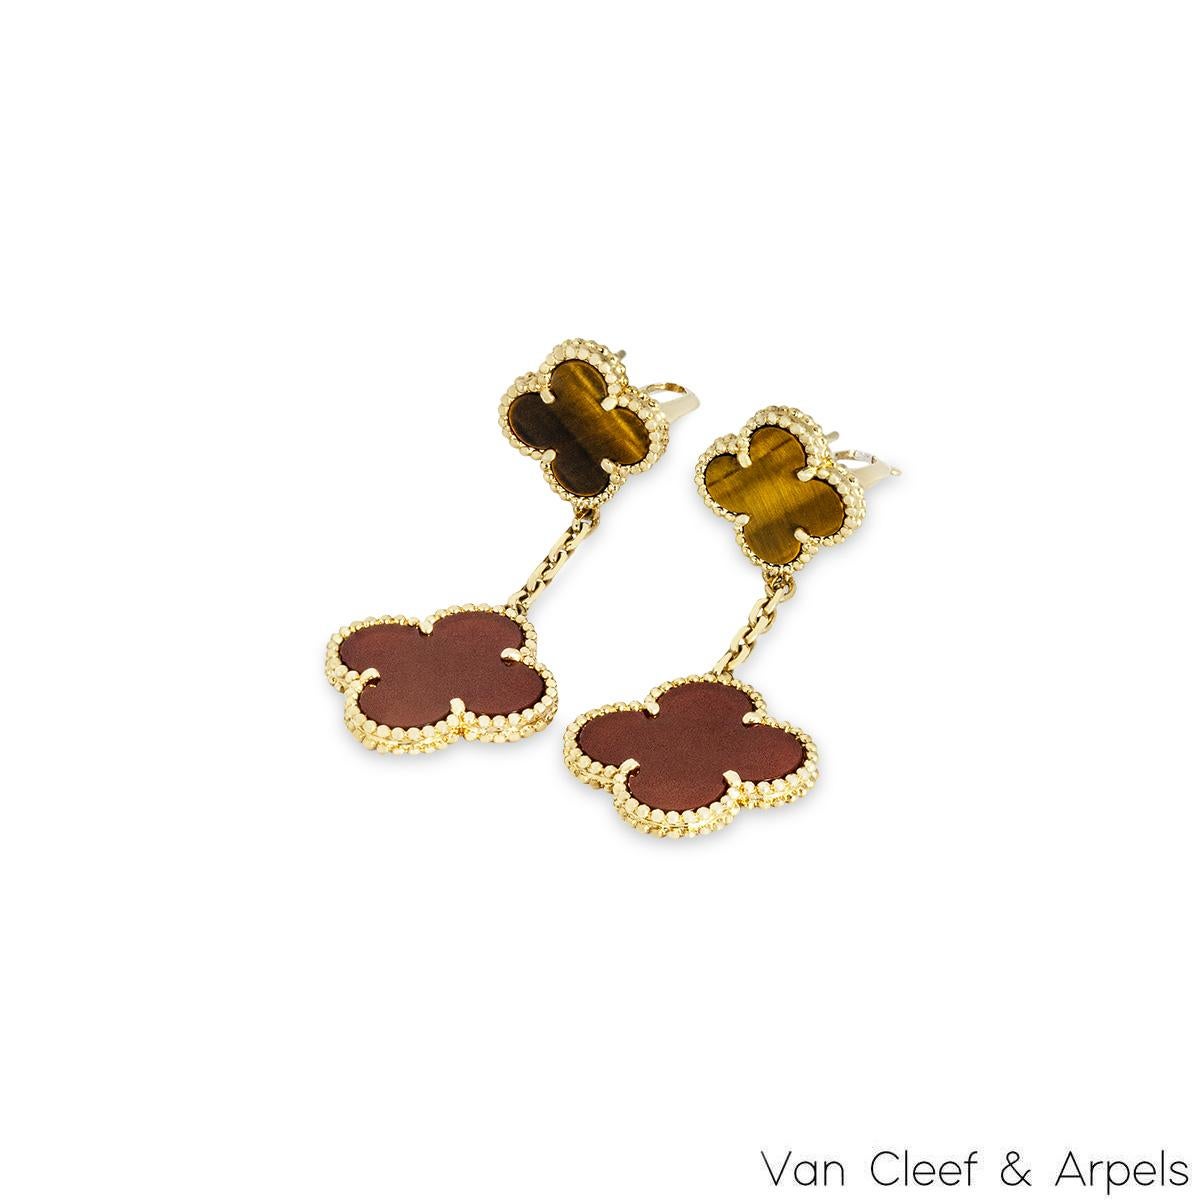 Une paire iconique de boucles d'oreilles en or jaune 18 carats de Van Cleef & Arpels, de la collection Magic Alhambra. Composé de deux motifs de trèfle à quatre feuilles alternant en taille et complétés par un bord extérieur perlé, le premier motif